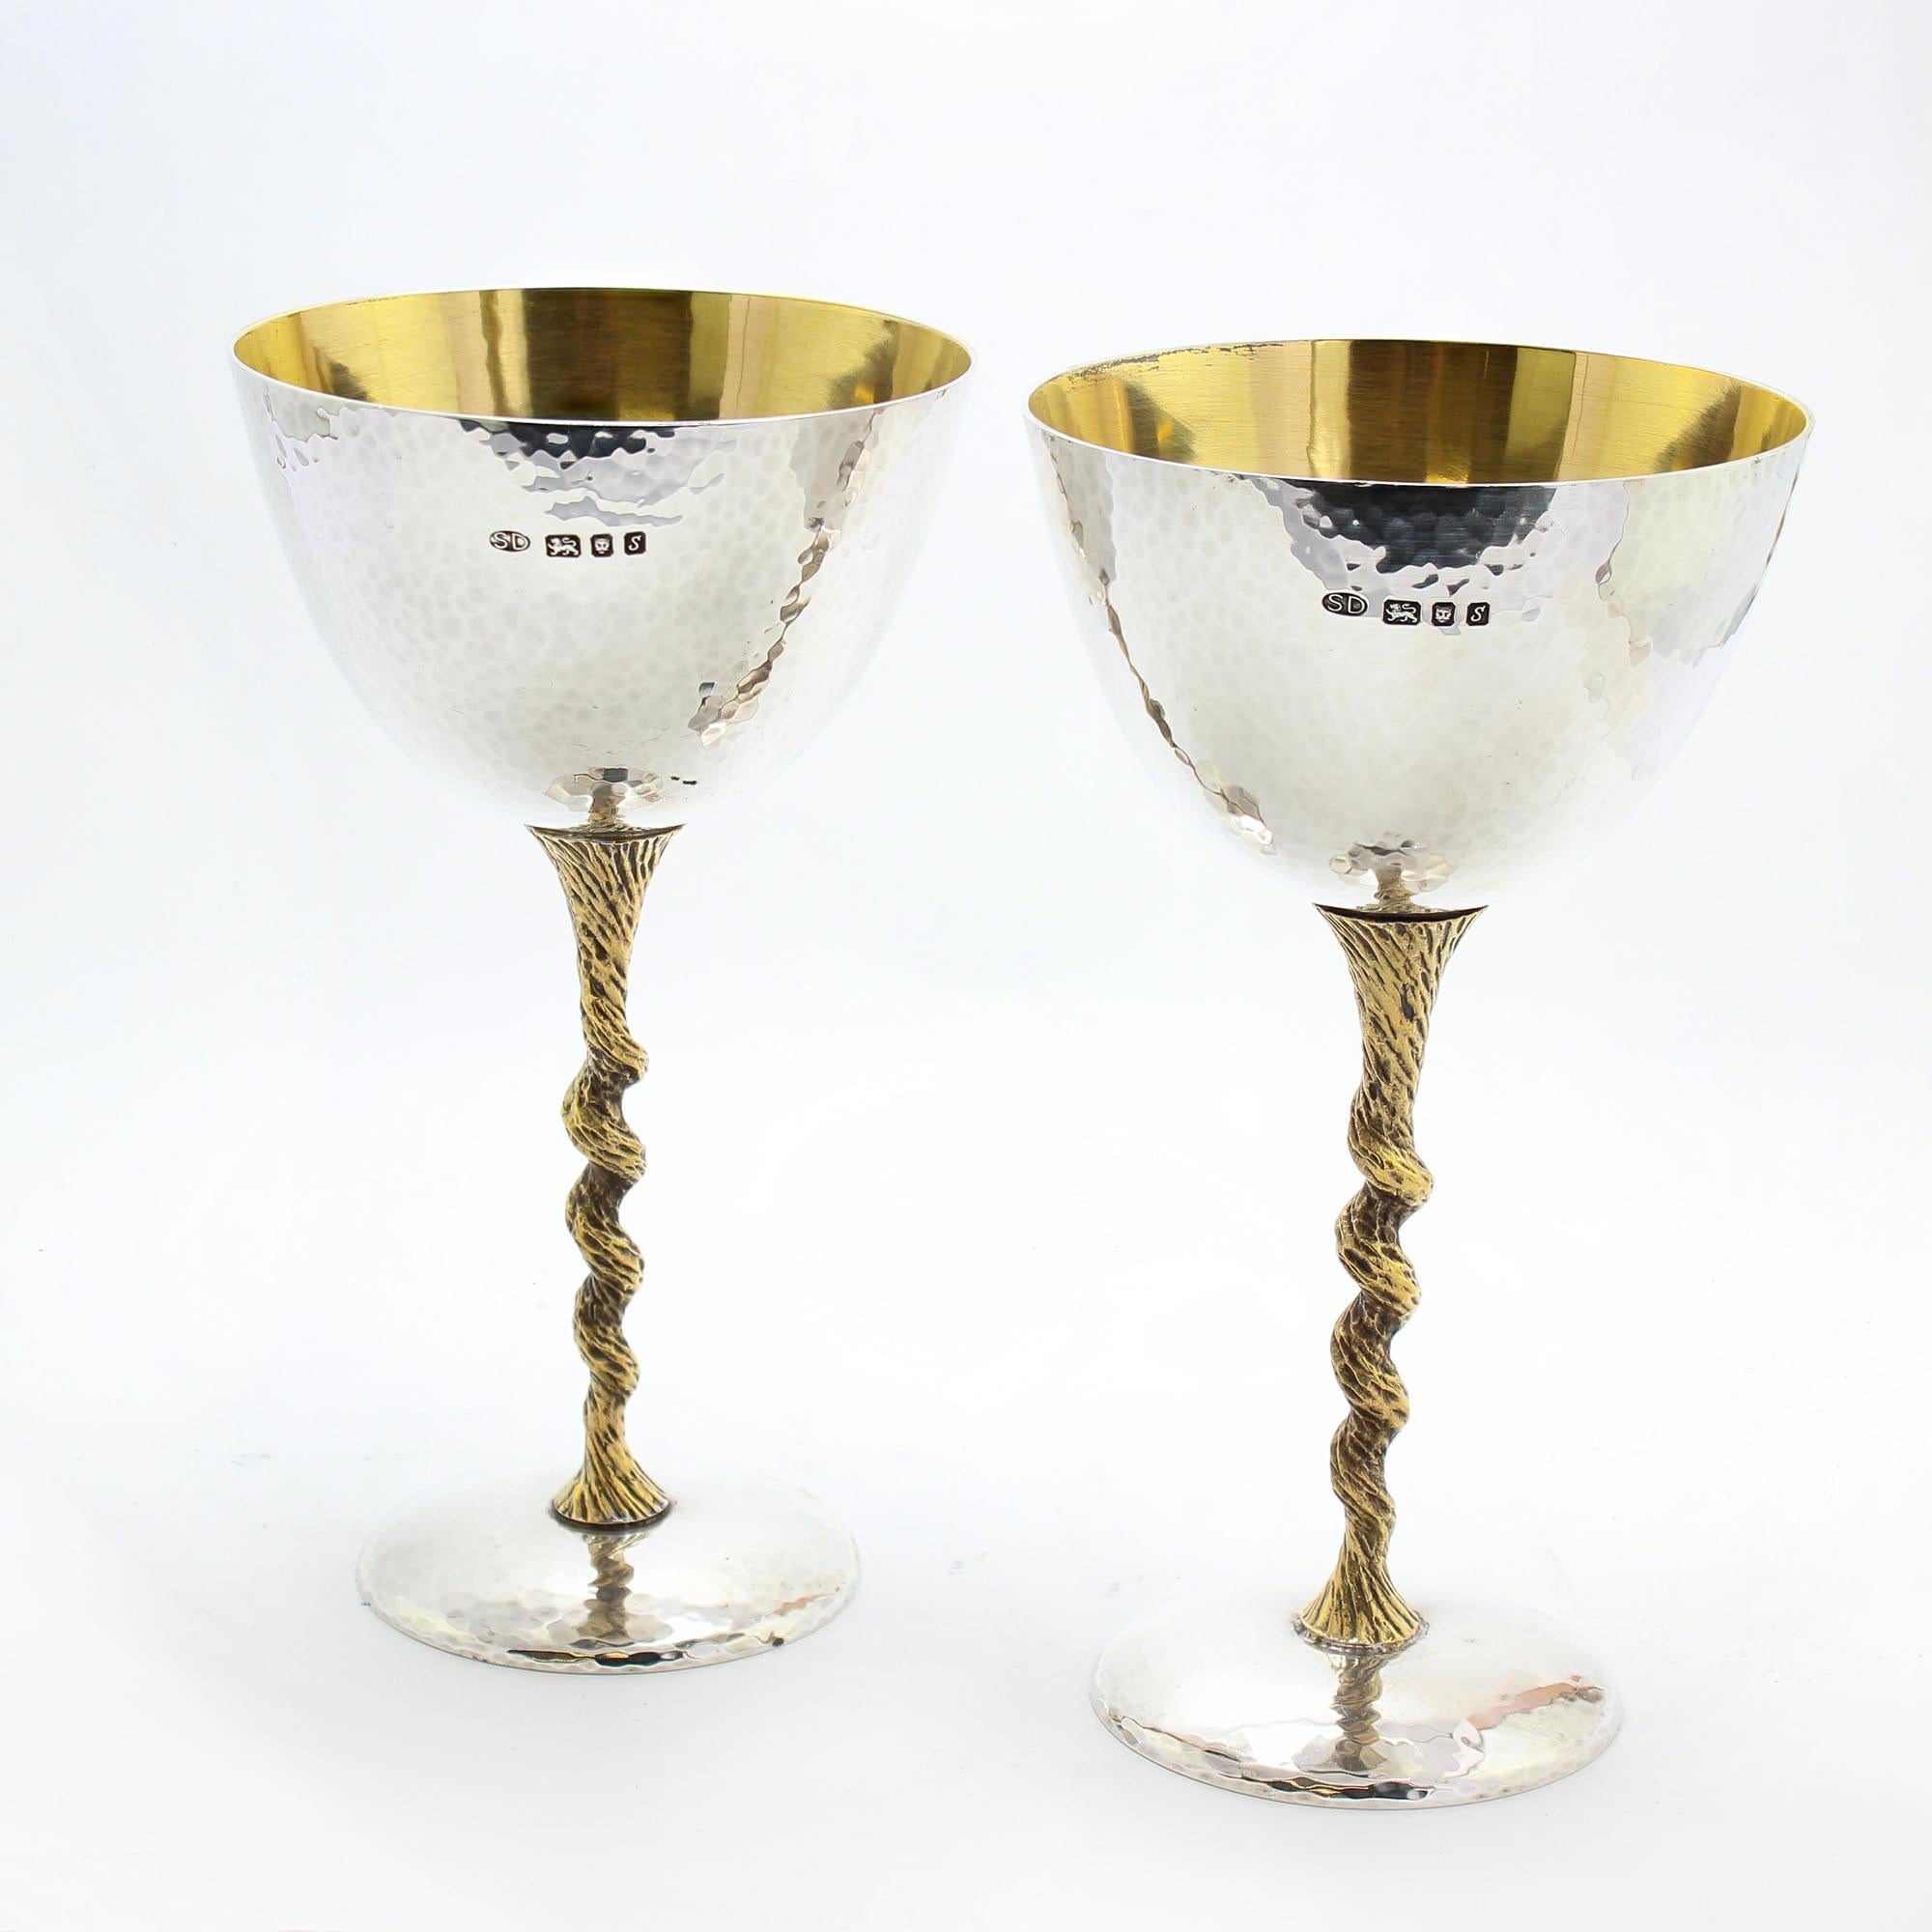 Diese raffinierten Champagnerflöten aus Sterlingsilber stammen aus den 1970er Jahren und wurden von dem legendären Stuart Devlin entworfen.
Die Arbeiten von Stuart Devlin sind in preisgekrönten Hotels und Restaurants auf der ganzen Welt zu